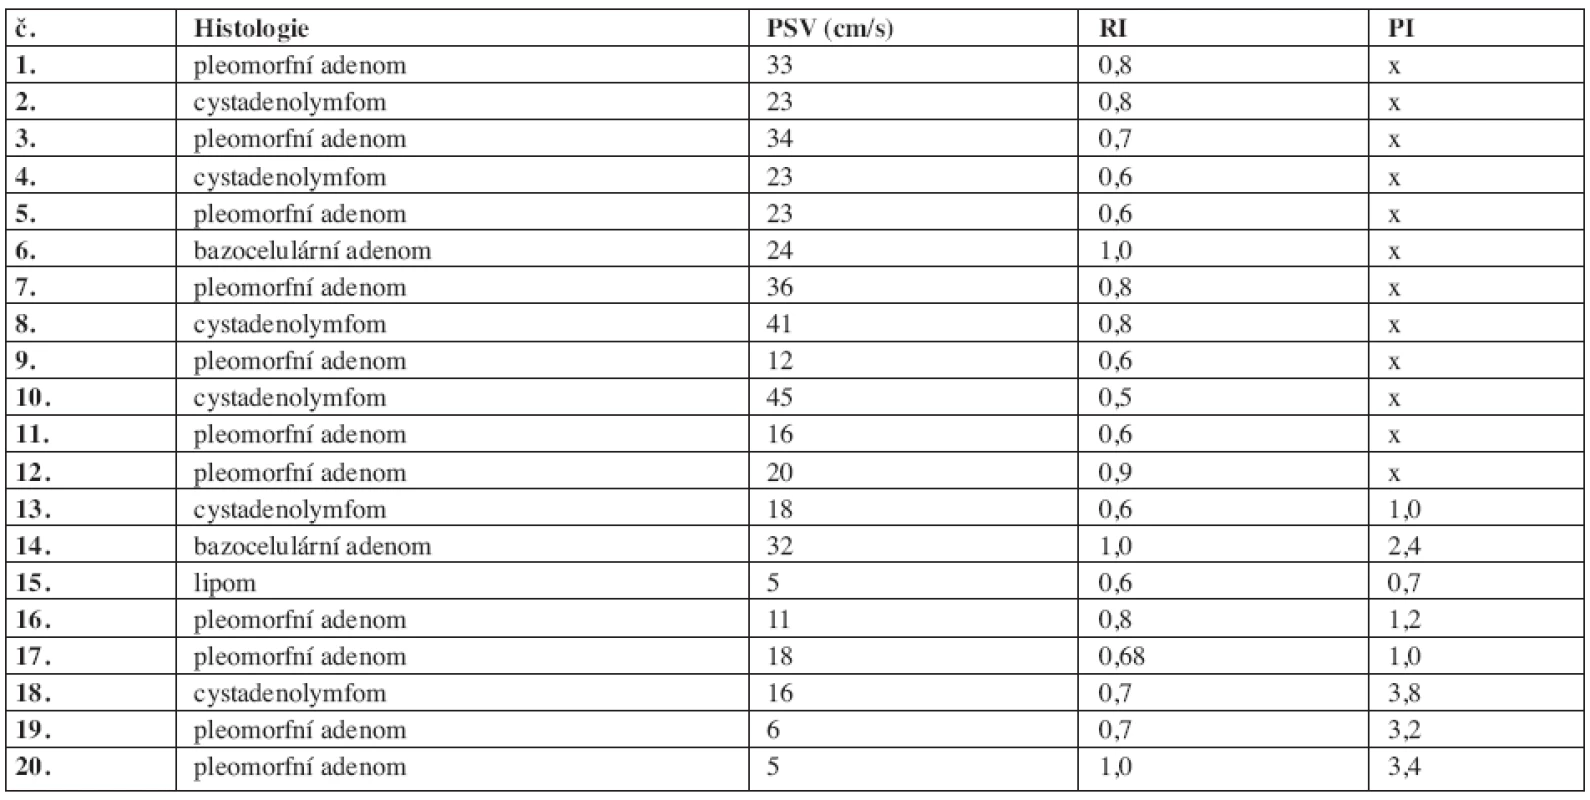 Srovnání výsledků histologického vyšetření benigních nádorů s hodnotami PSV, RI a PI.